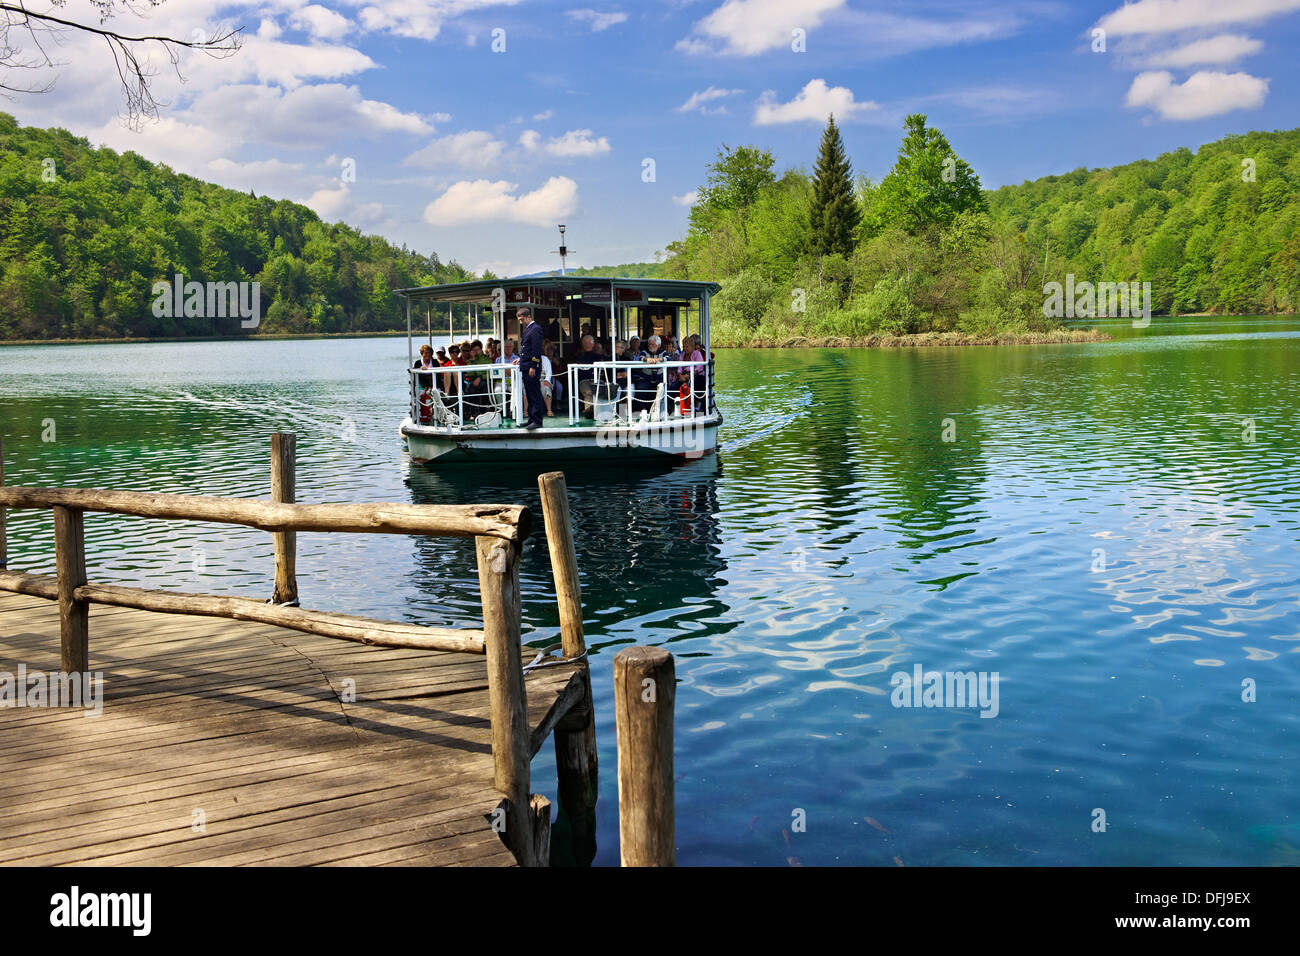 La barca elettrica che stava trasportando i turisti attraverso uno dei laghi di Plitvice. Laghi di Plitvice ( Plitvi ka ) Lakes National Park, Croazia. Foto Stock